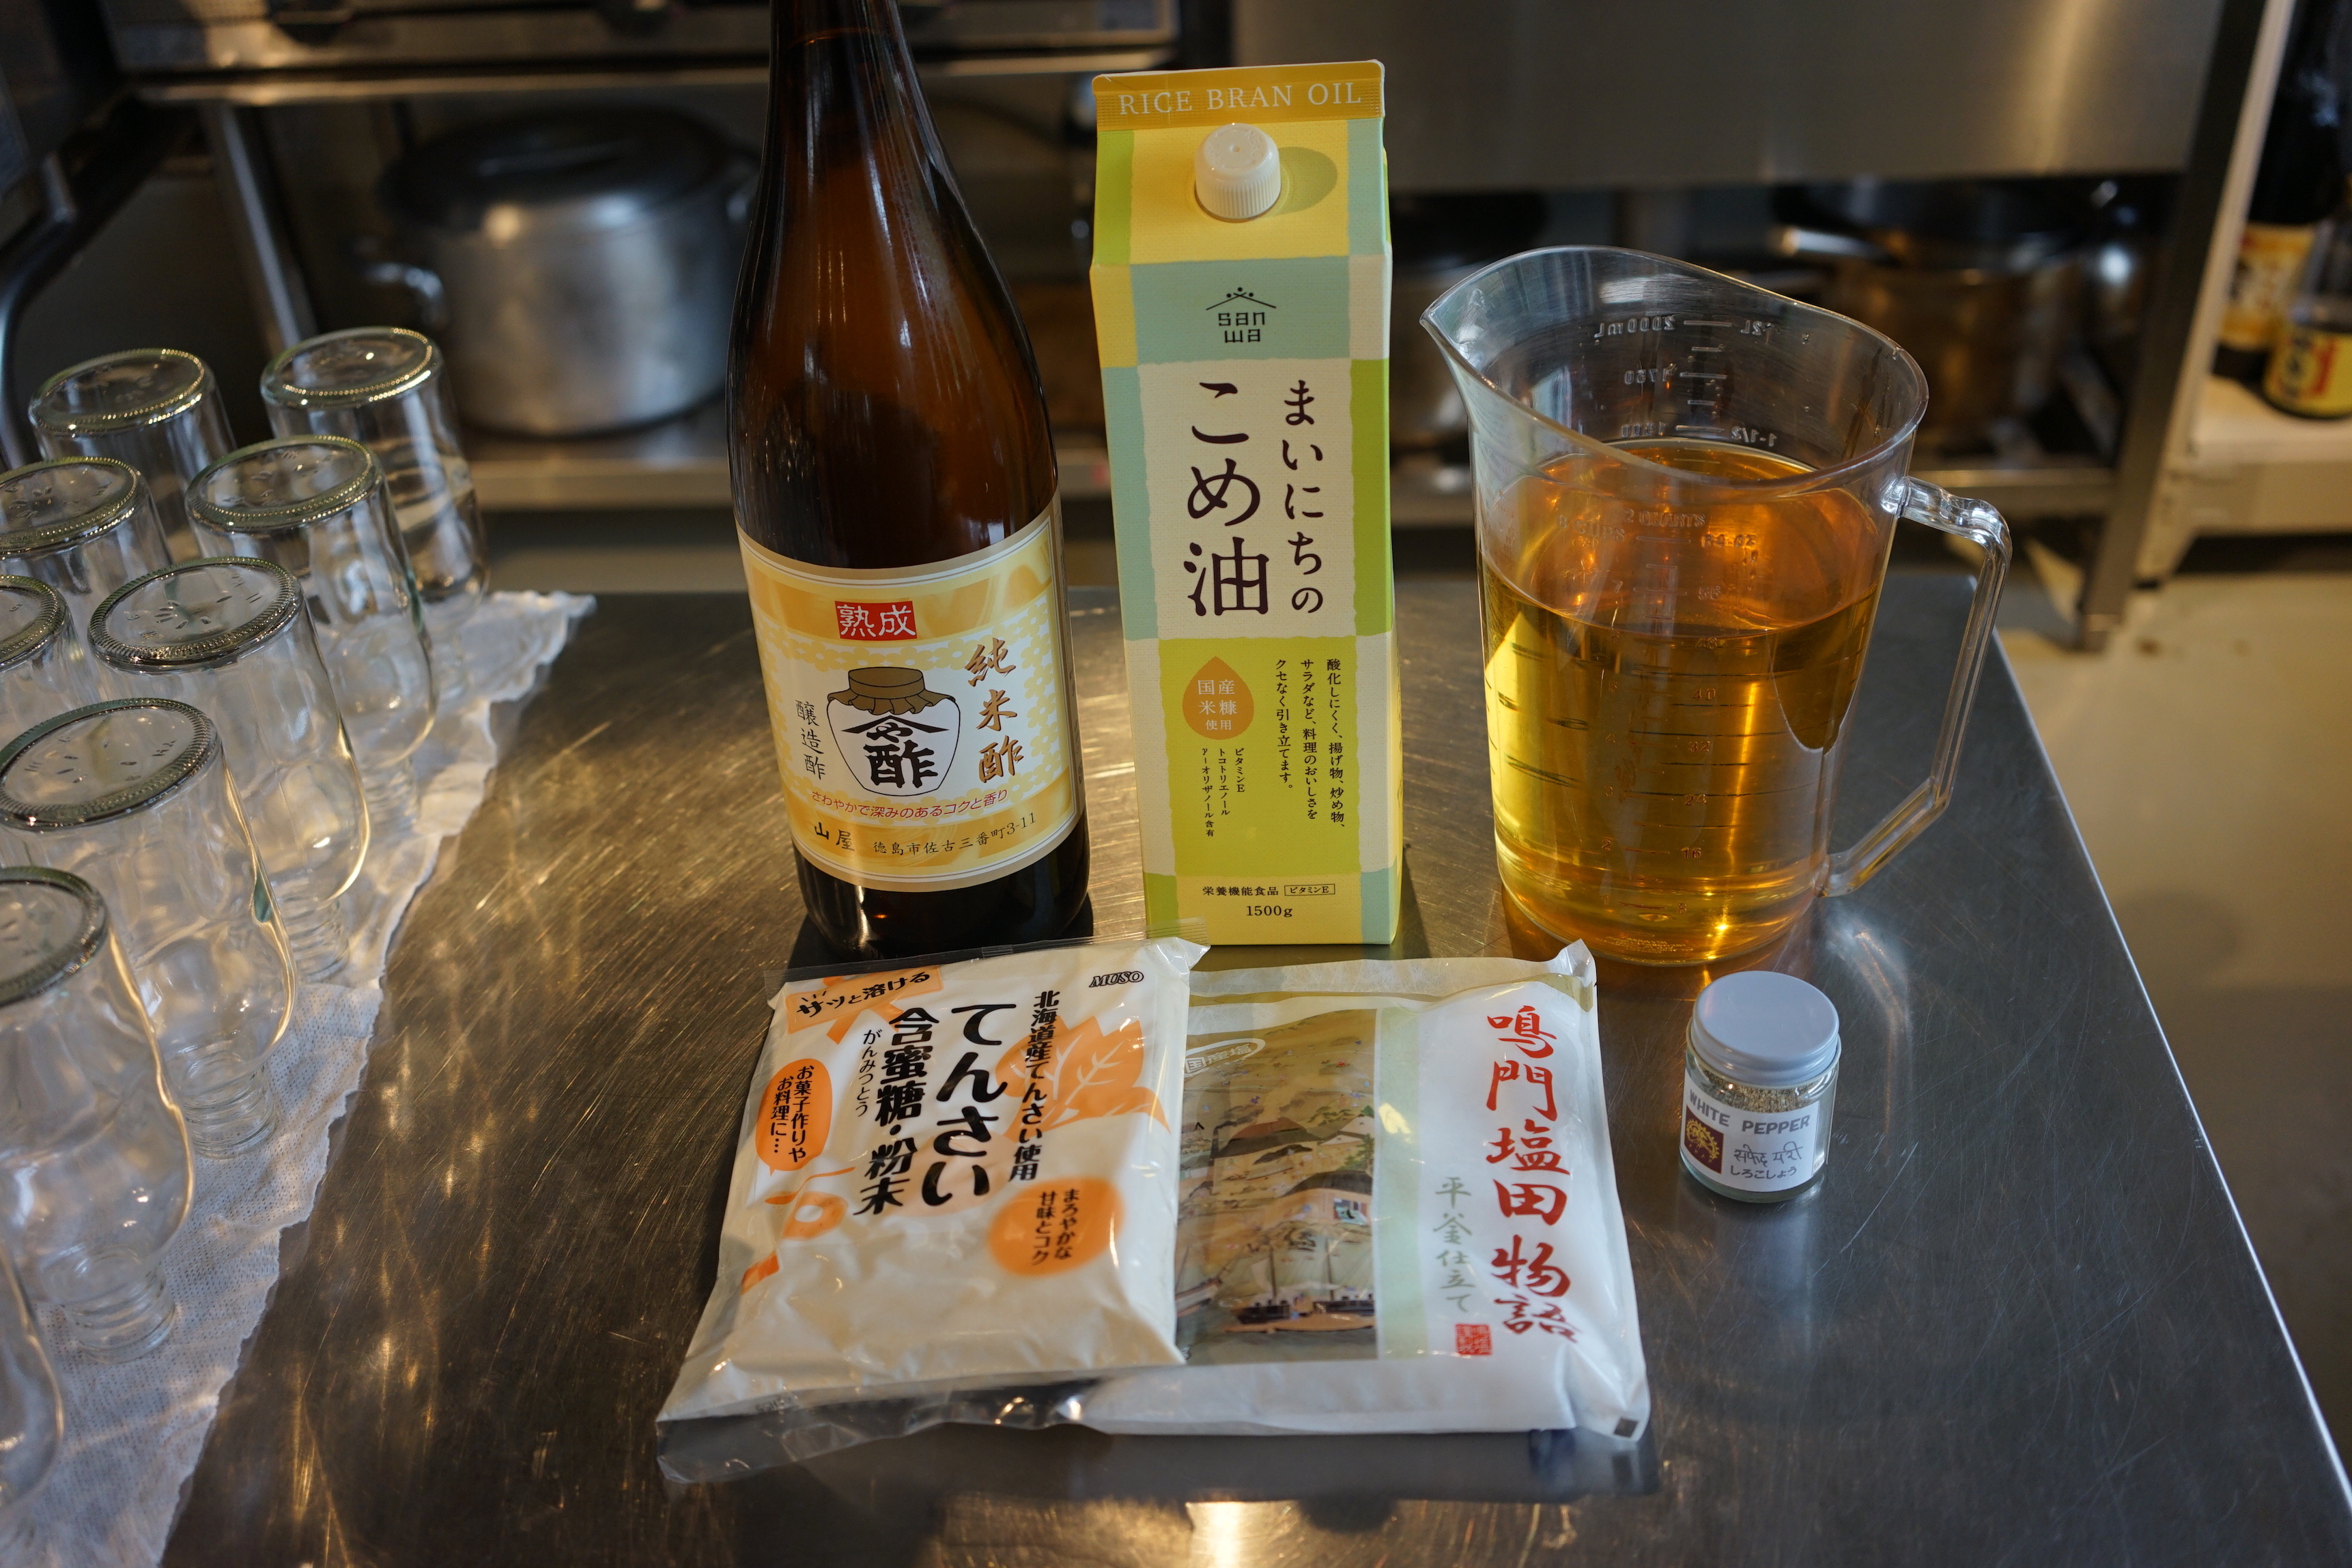 地元で作られた純米酢と塩、無添加で原材料にこだわった調味料